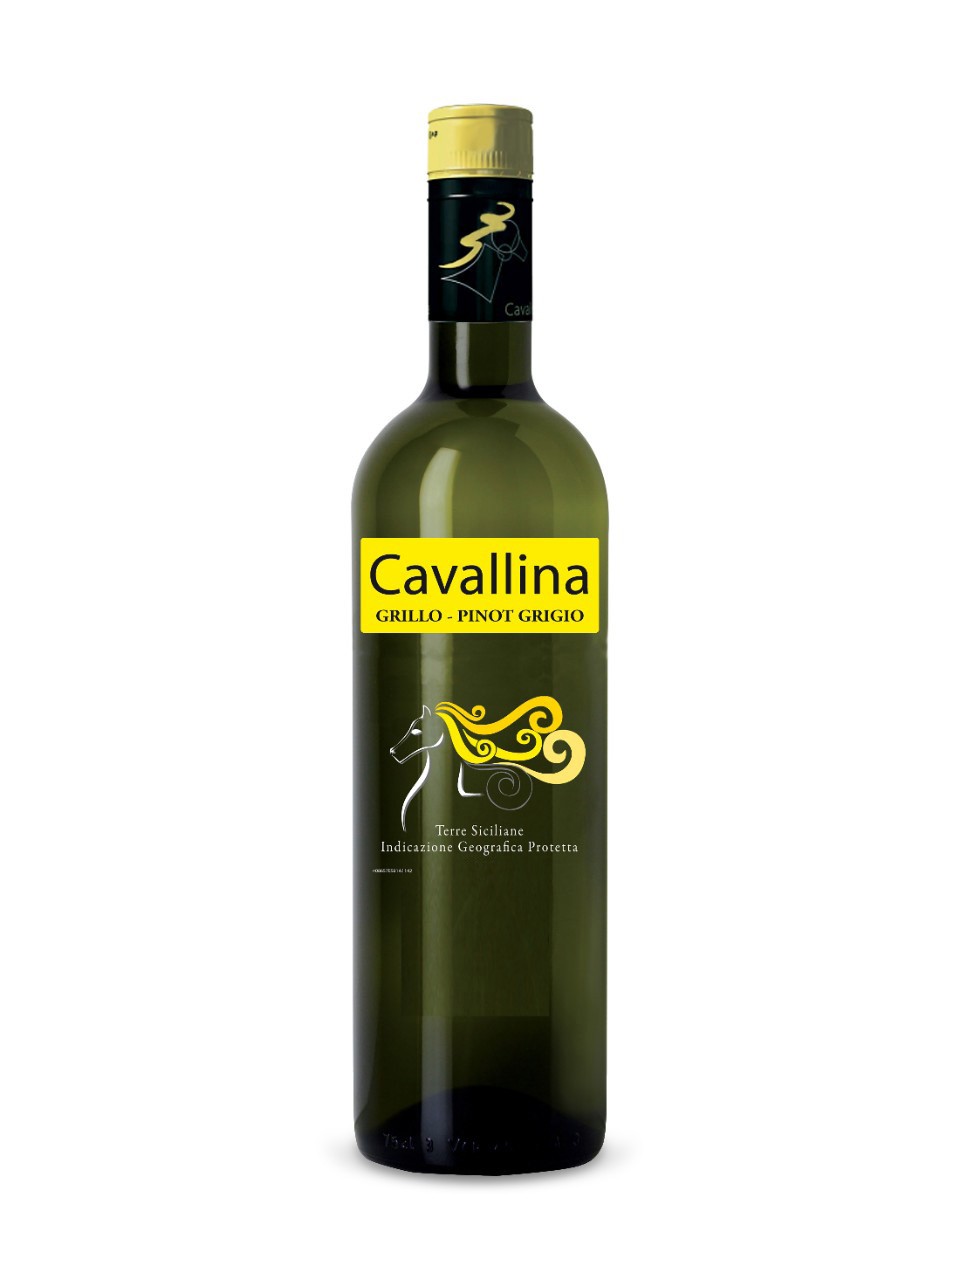 Cavallina Grillo/Pinot Grigio